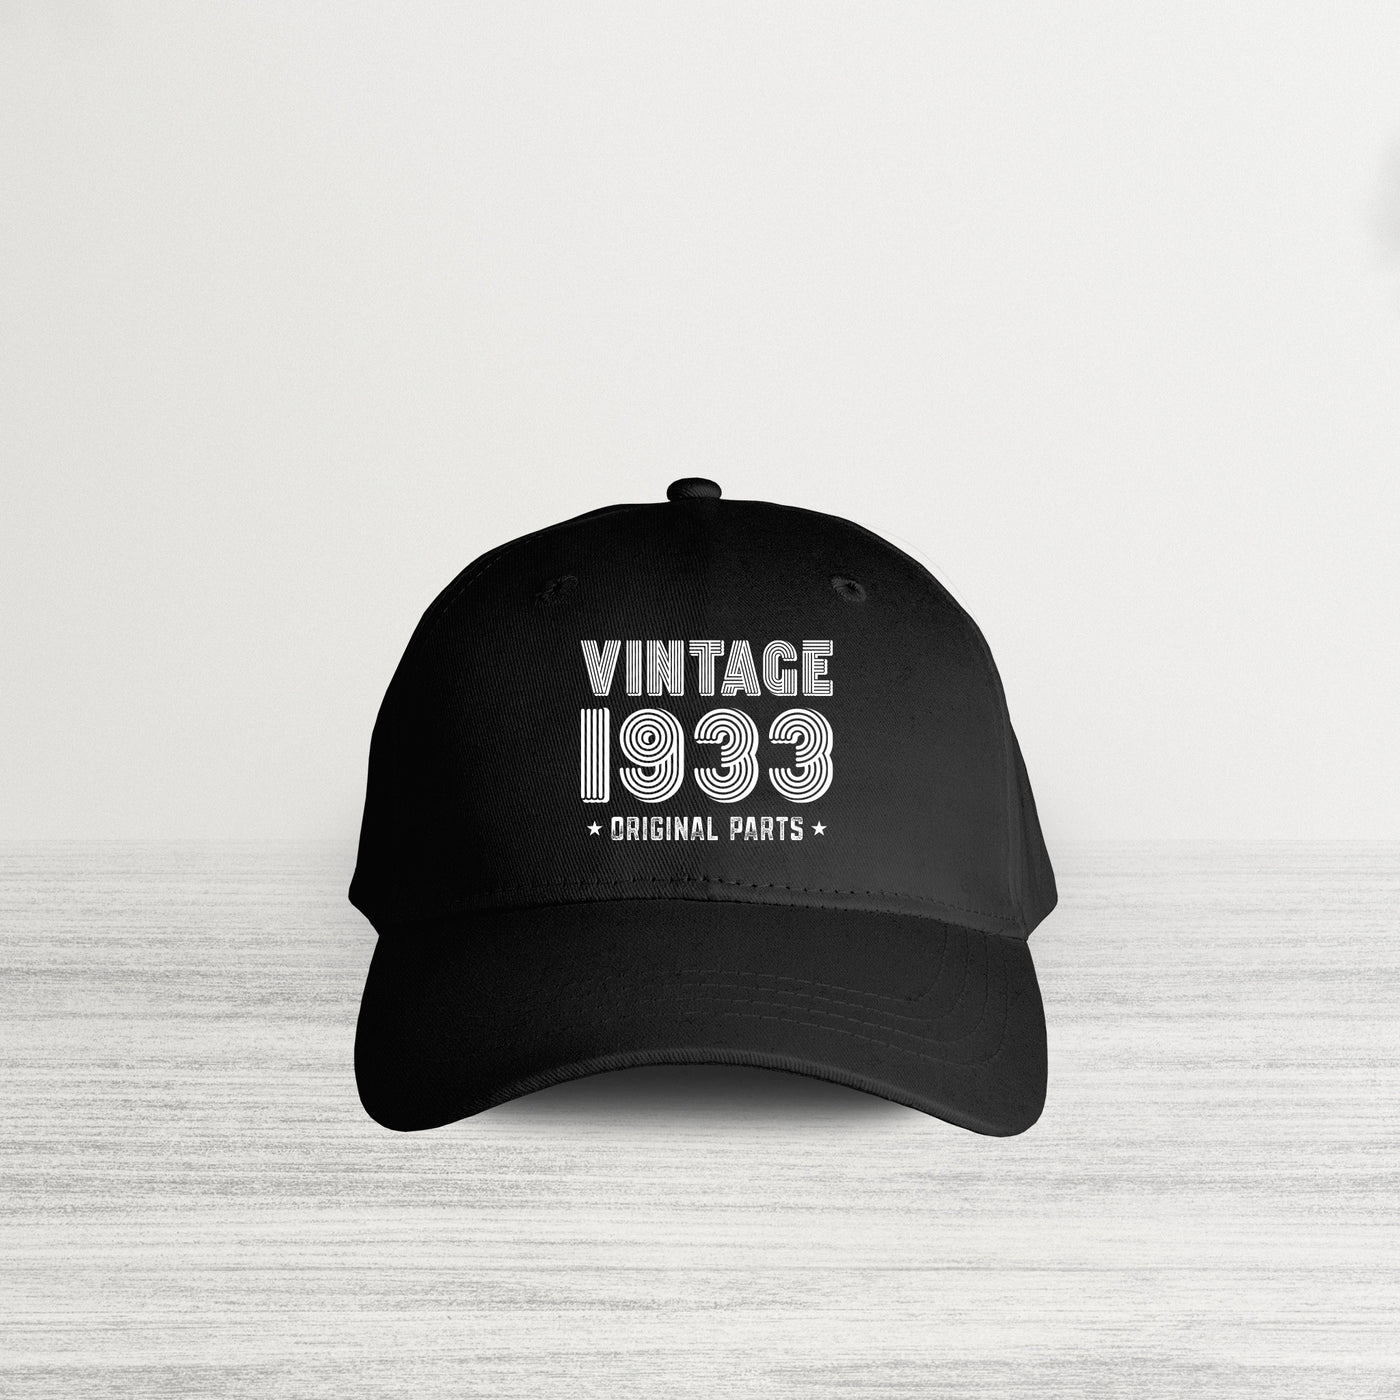 VINTAGE 1933 HAT